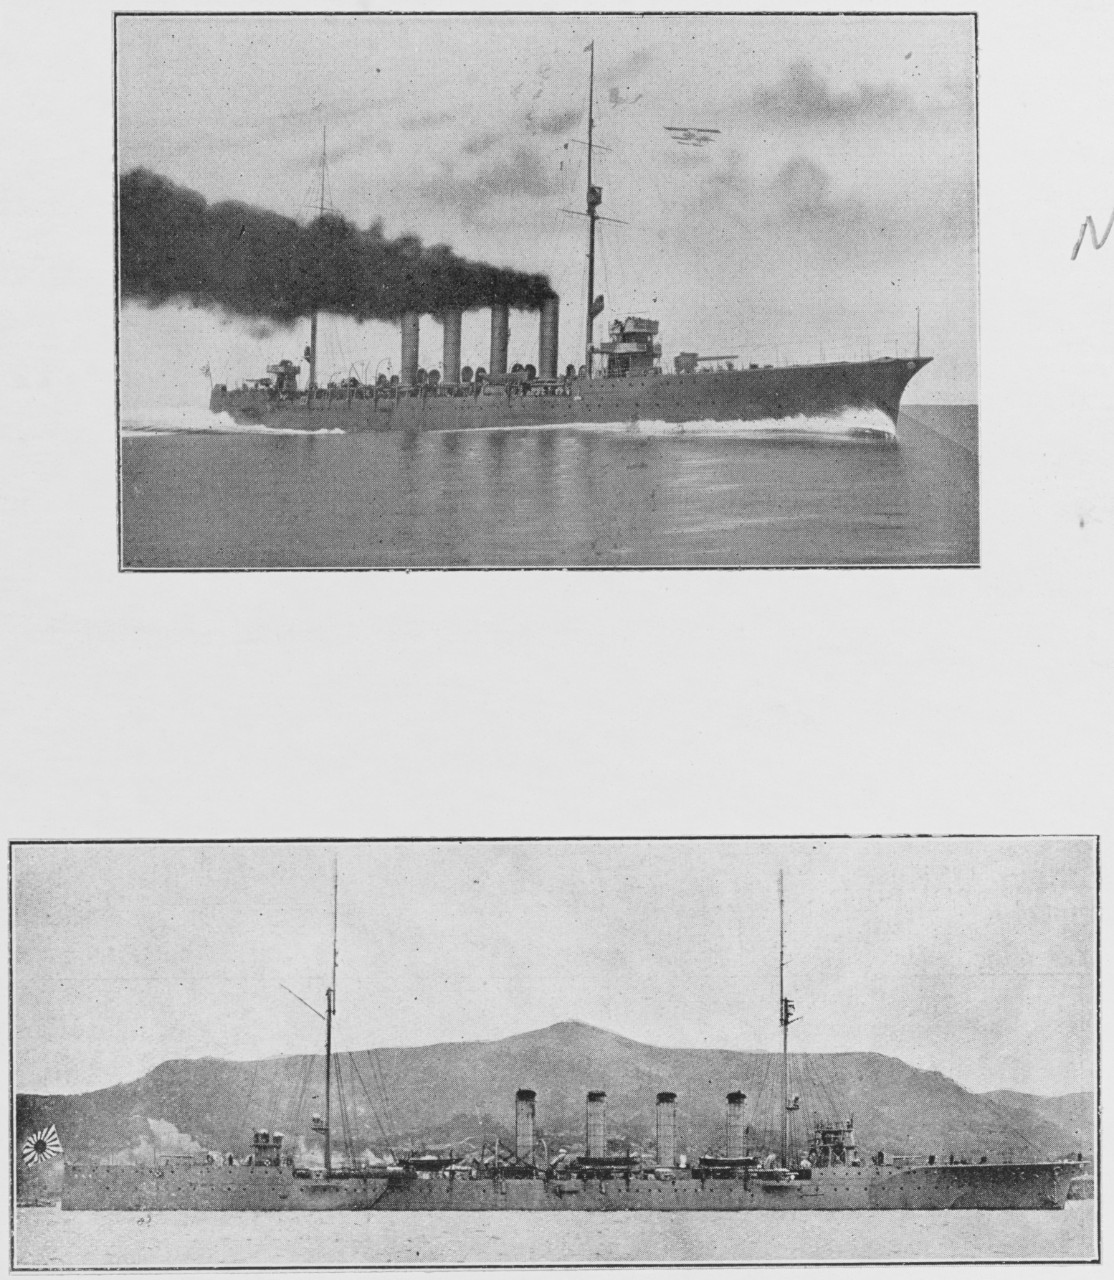 Japanese cruiser HIRATO